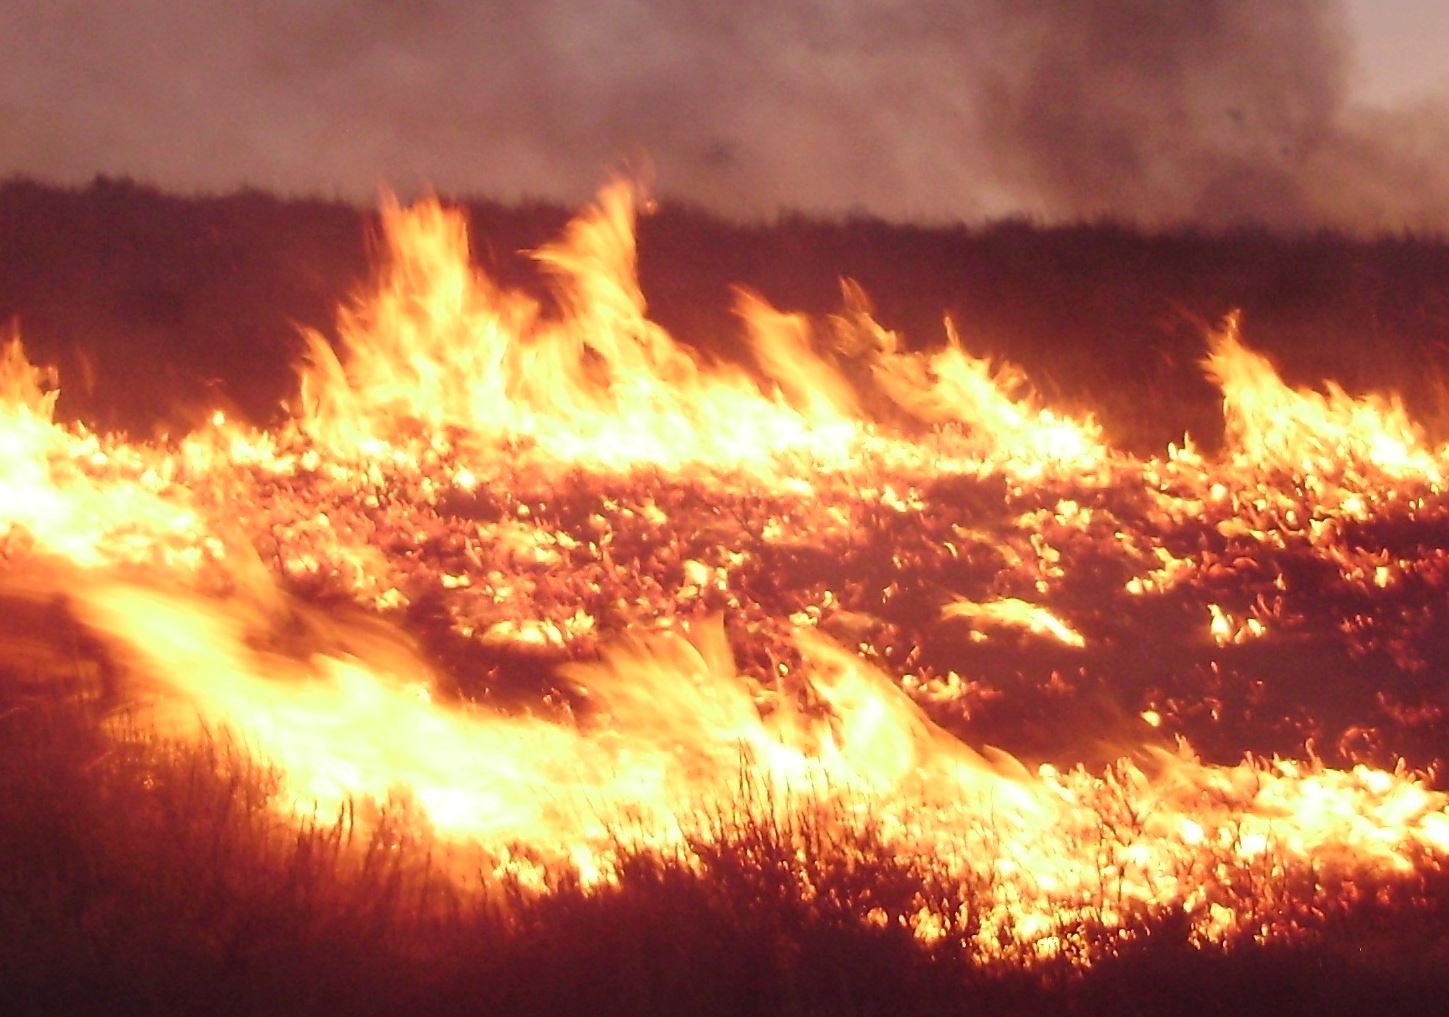 Wildfire from Wikimedia